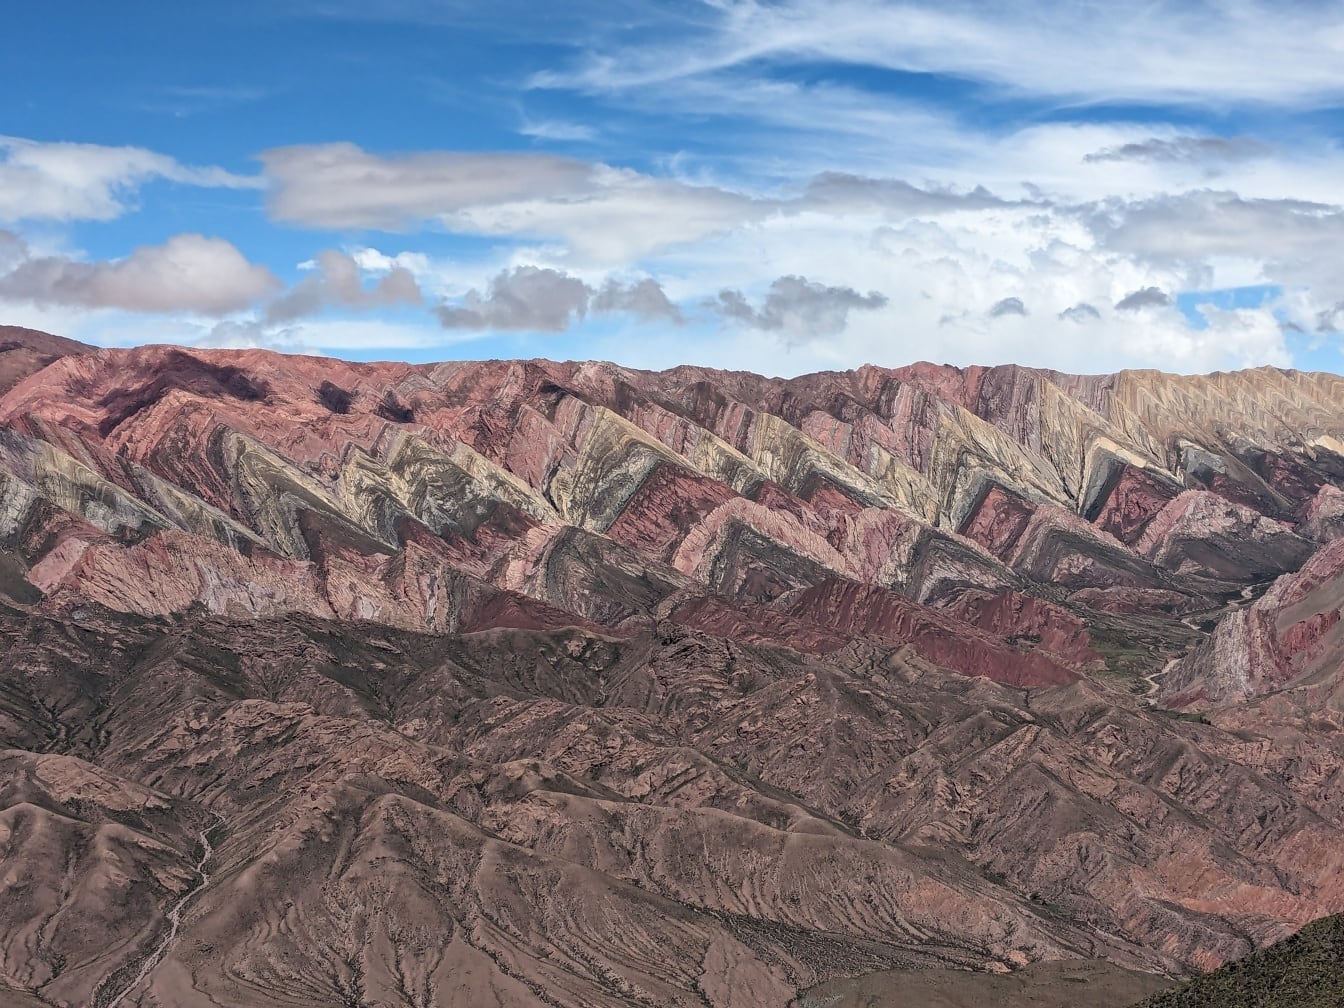 ยอดเขาที่เรียกว่า Serranía de Hornocal ที่มีหินหลากสีในภูเขาทางตะวันตกเฉียงเหนือของอาร์เจนตินา